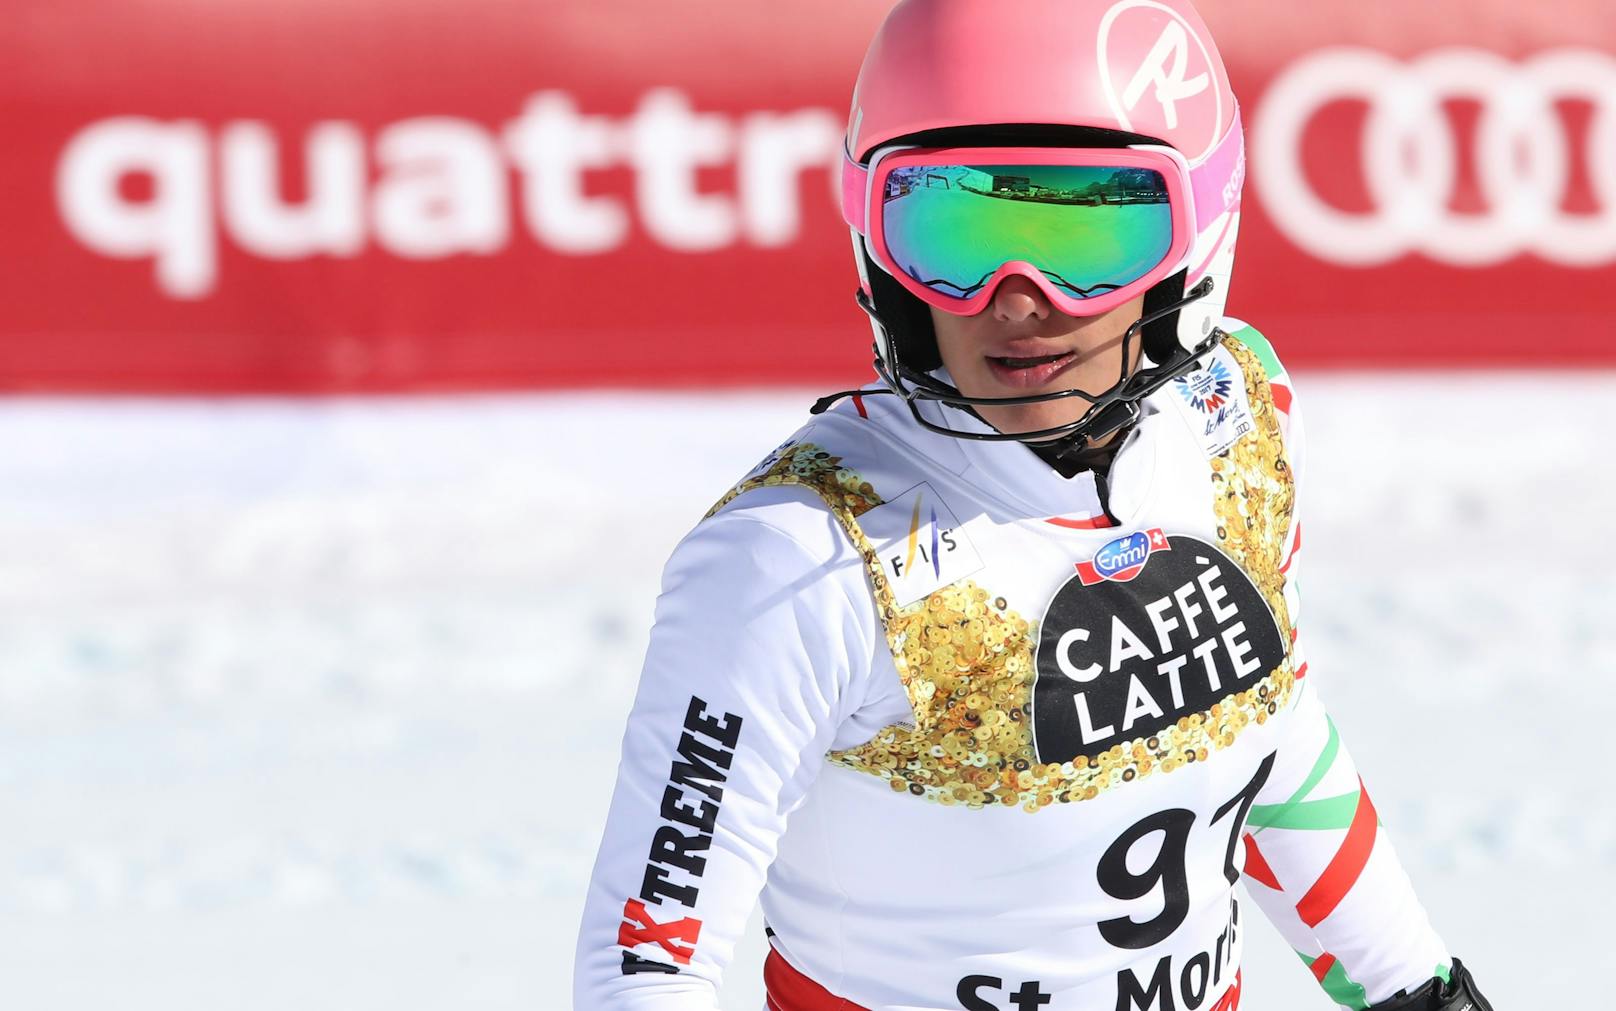 Ehemann verbietet Trainerin Reise zur Ski-WM